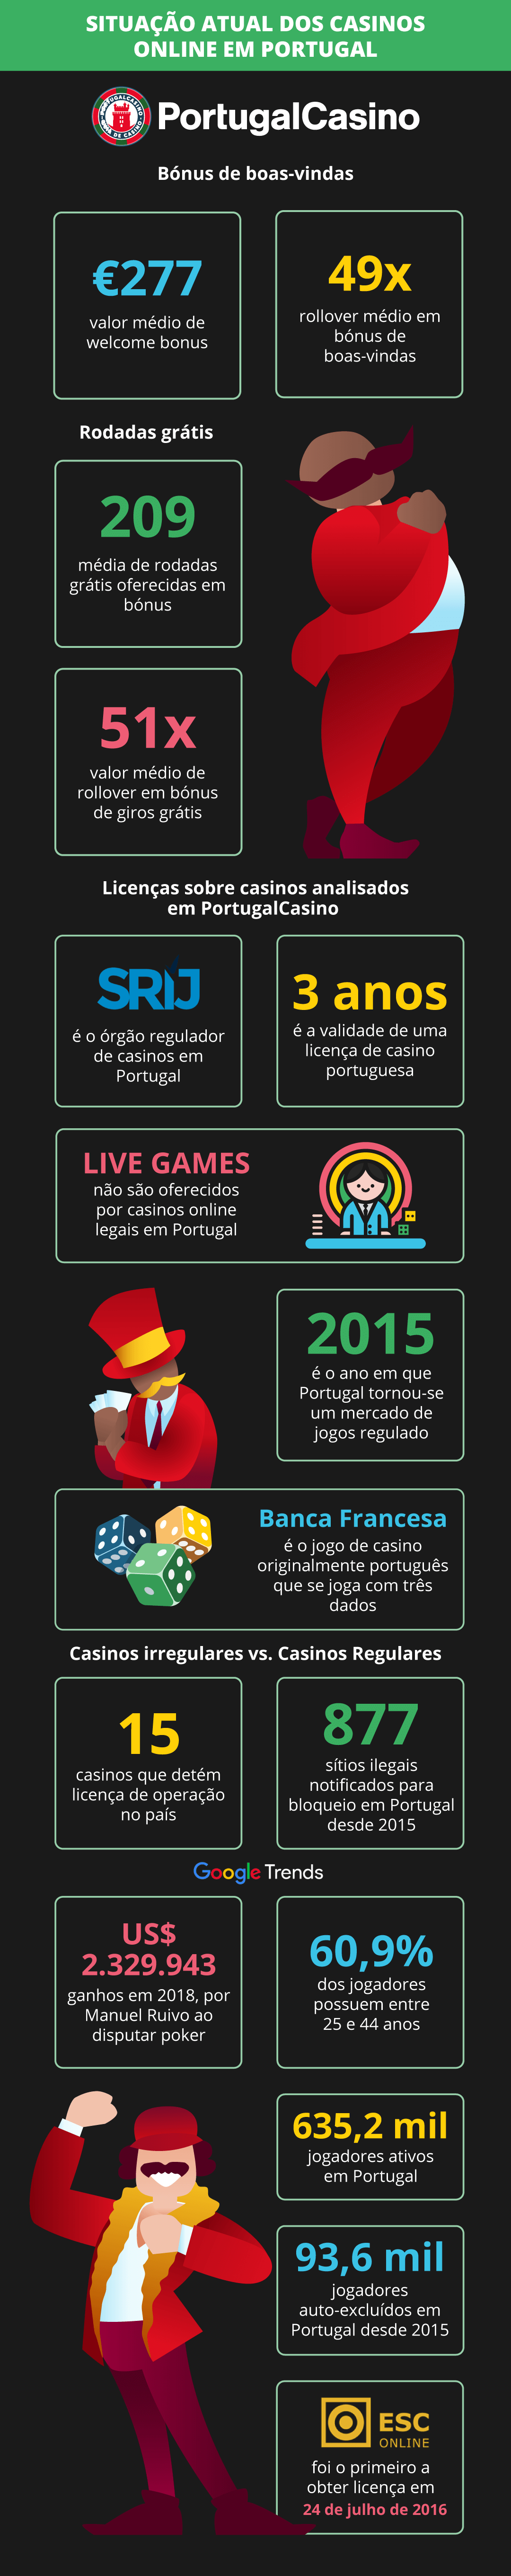 Cenário atual dos Casinos Online em Portugal - Infográfico 2021